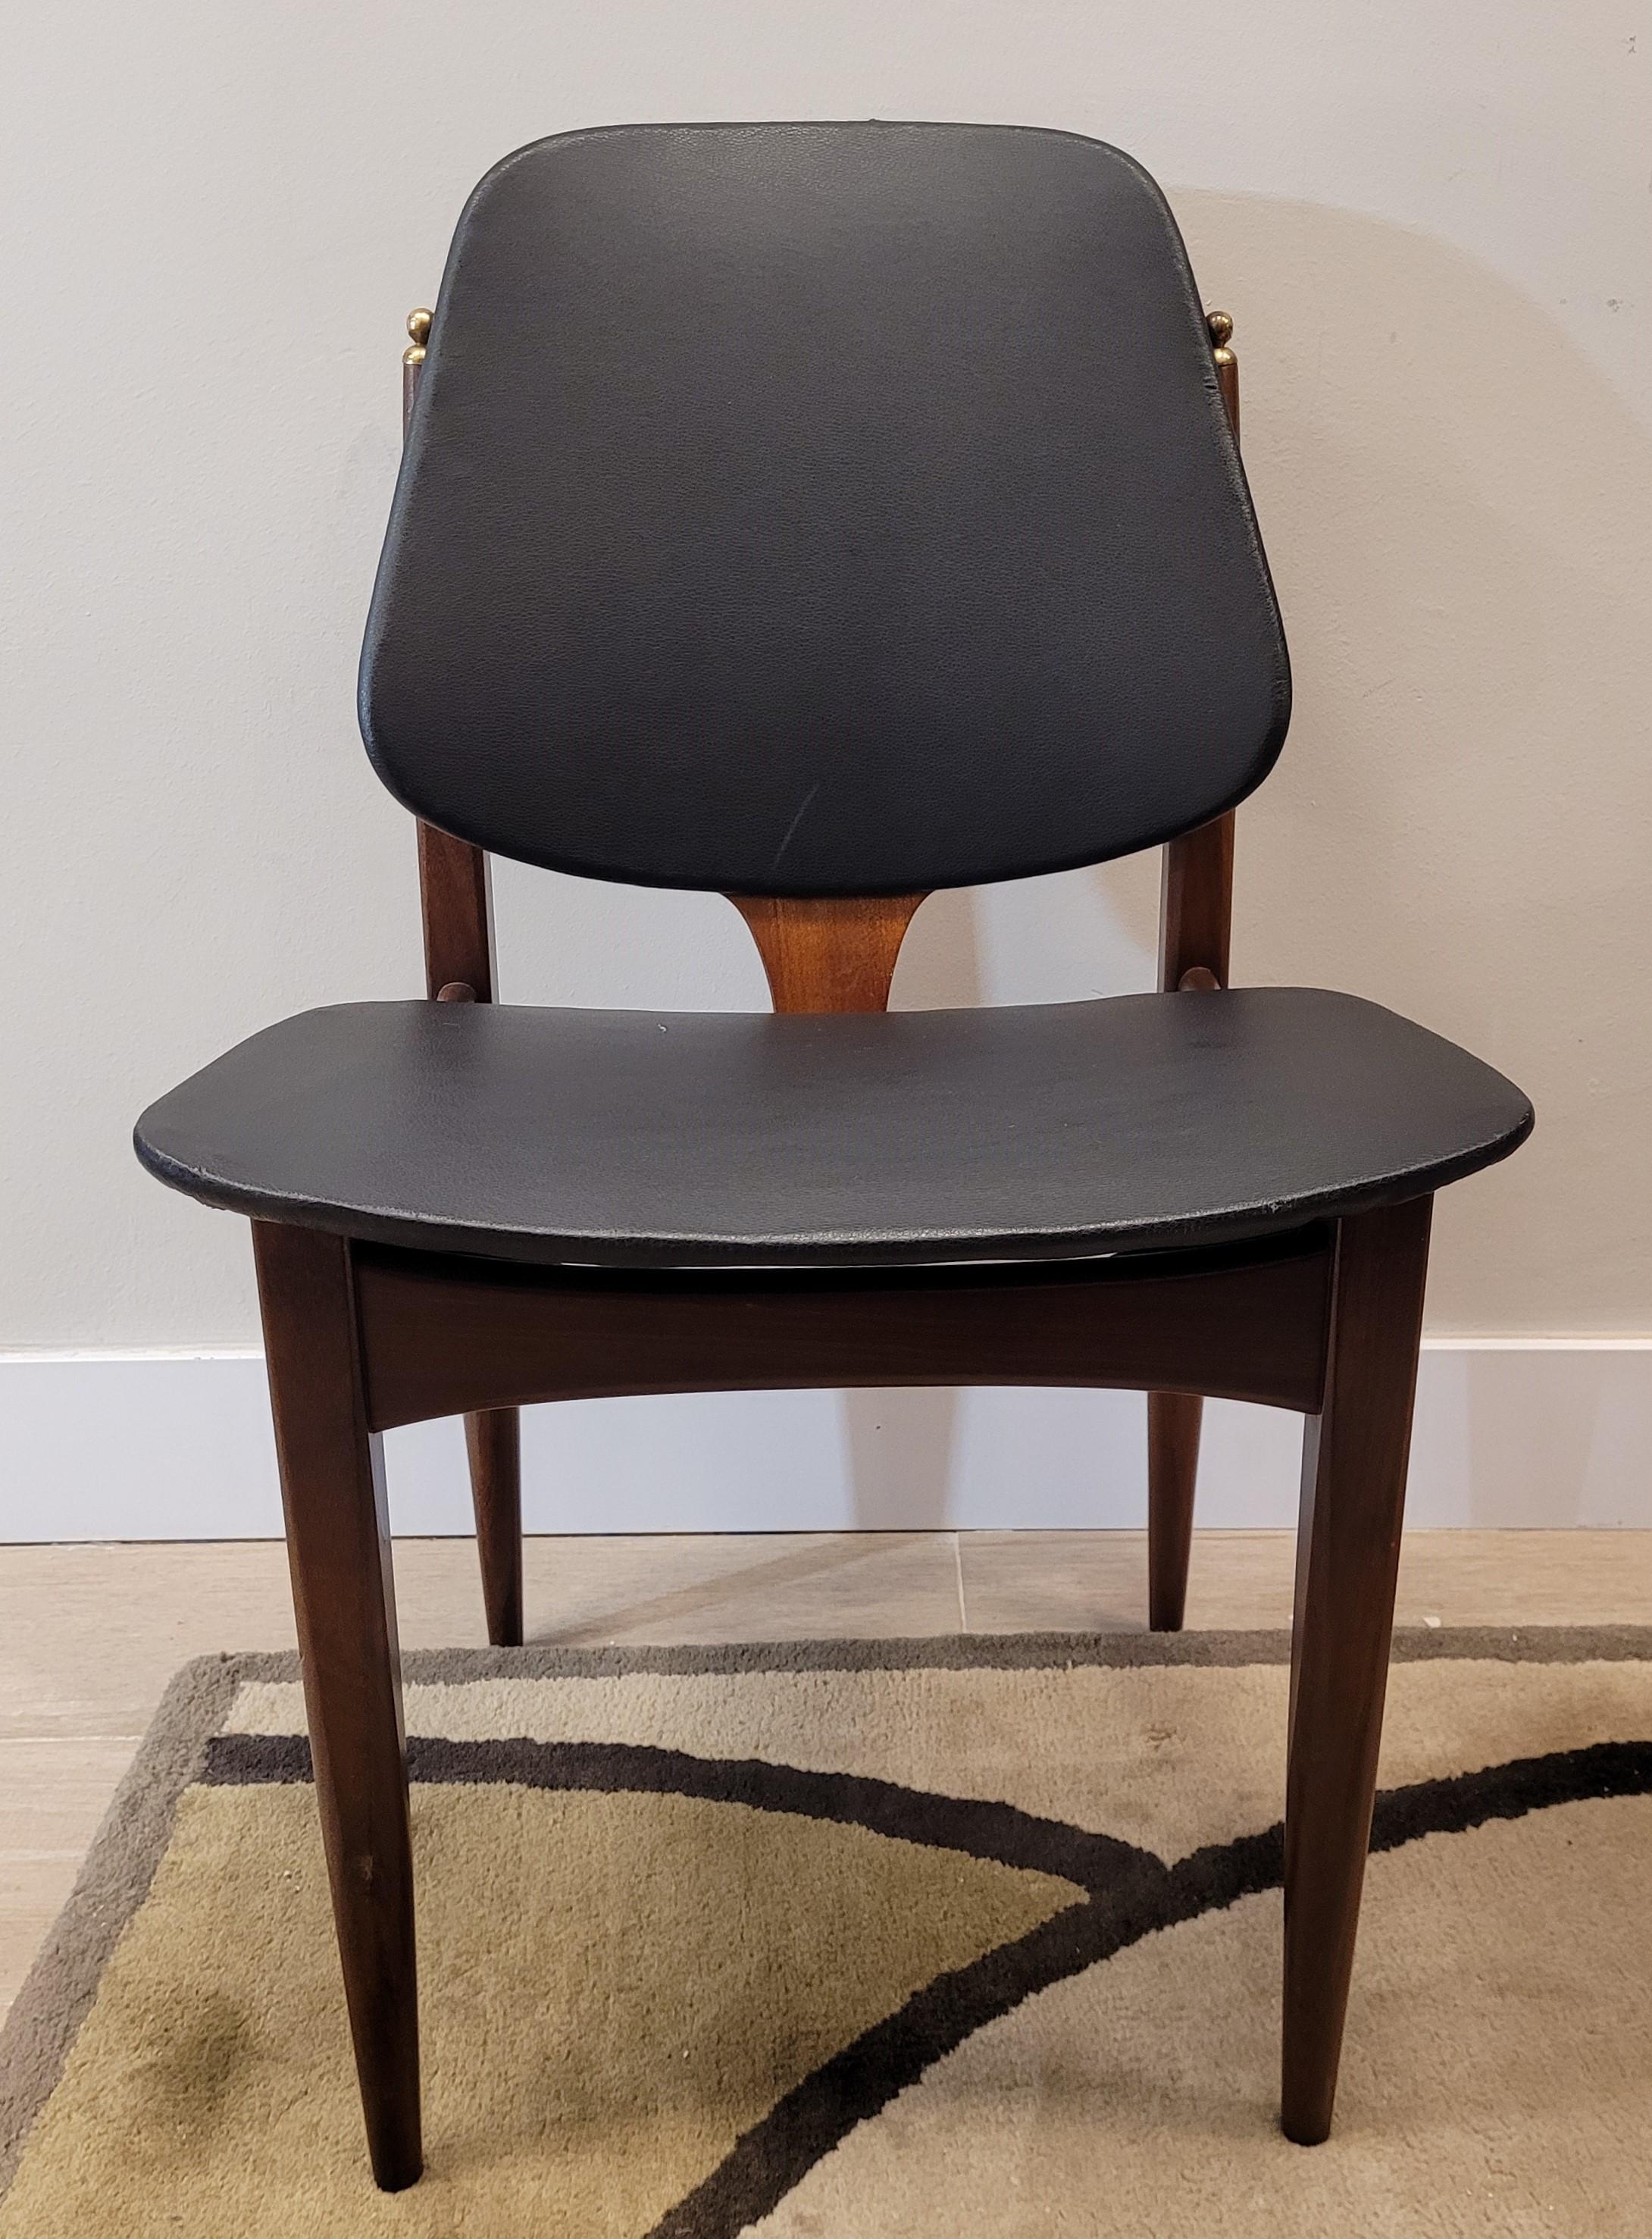 Exquise et belle  Paire de chaises de style Midcentury fabriquées par la manufacture anglaise Elliots of Newbury, dans le Berkshire. Chaque chaise est structurée en bois de teck et recouverte de cuir noir avec une finition satinée. Éléments